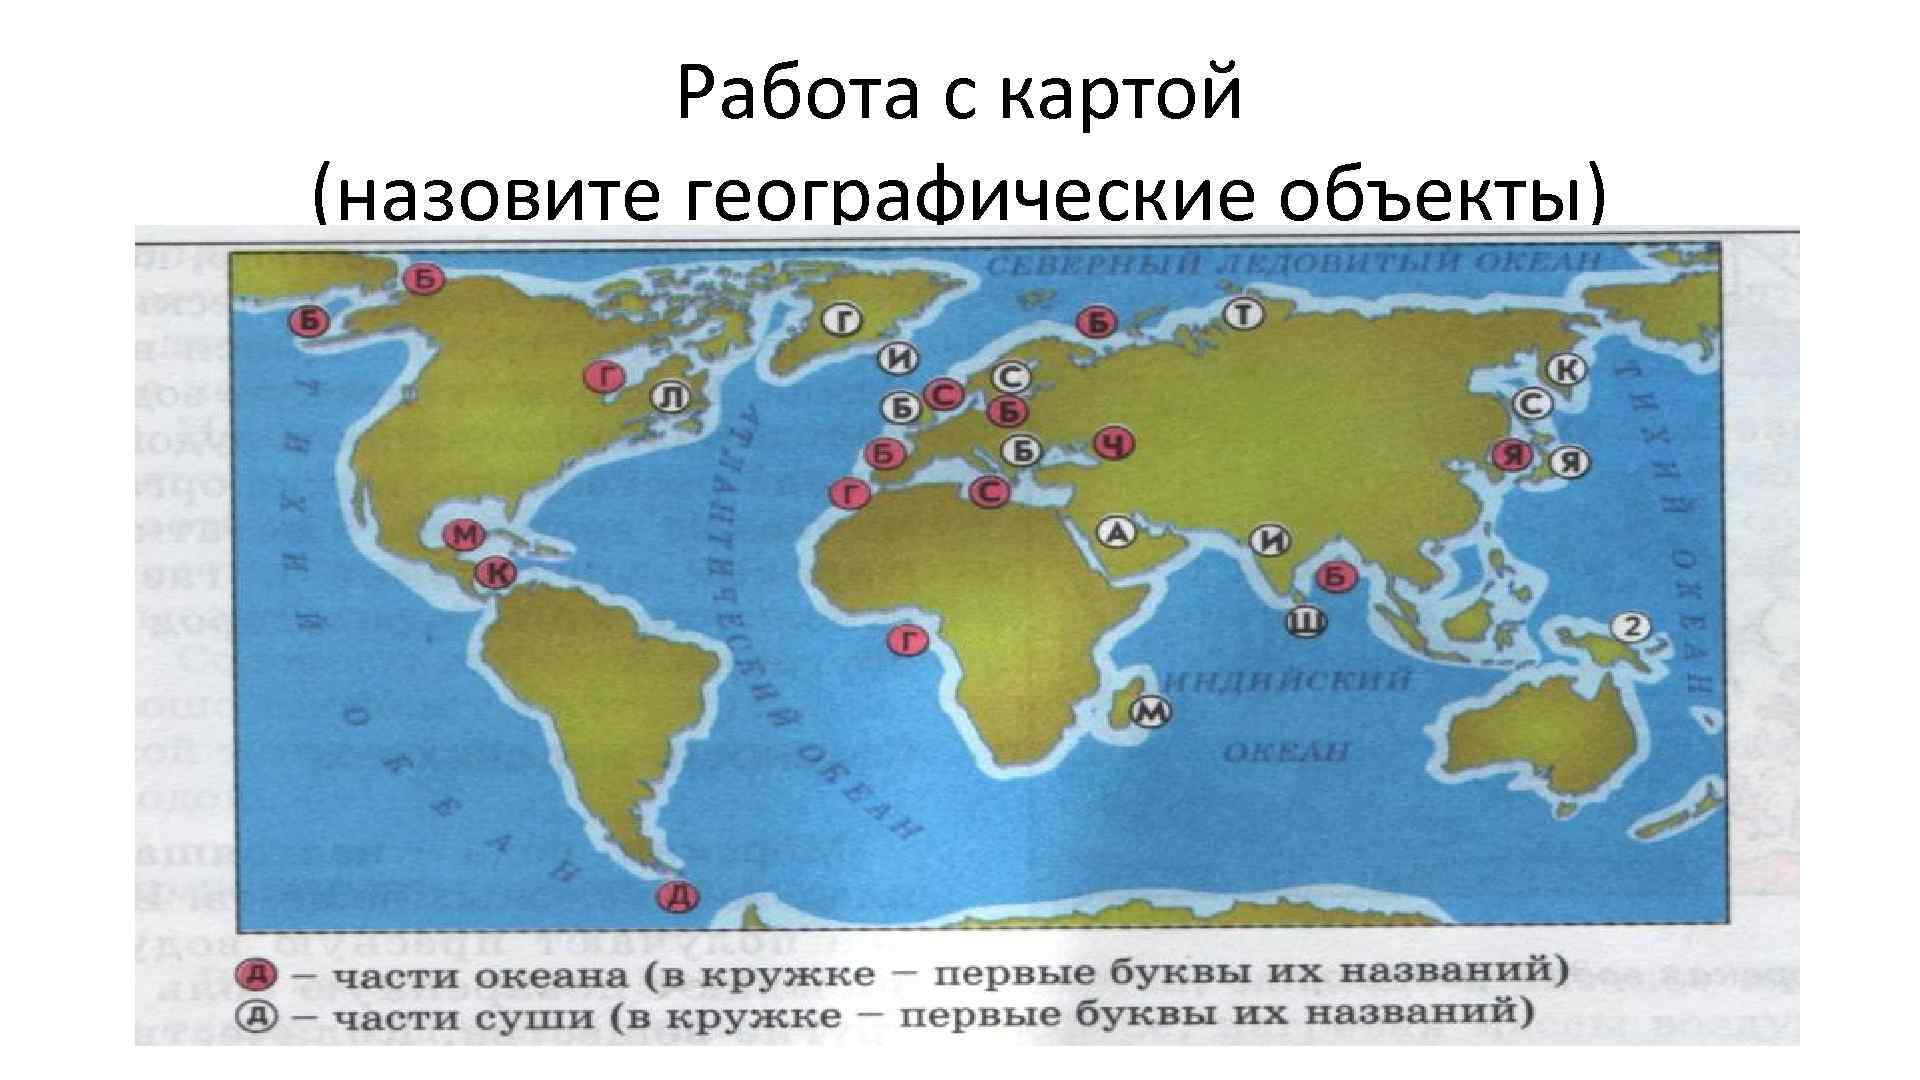 Название географии означает. Объекты мирового океана на карте. Название географических объектов. Географические объекты на карте. Географическими объектами называют.